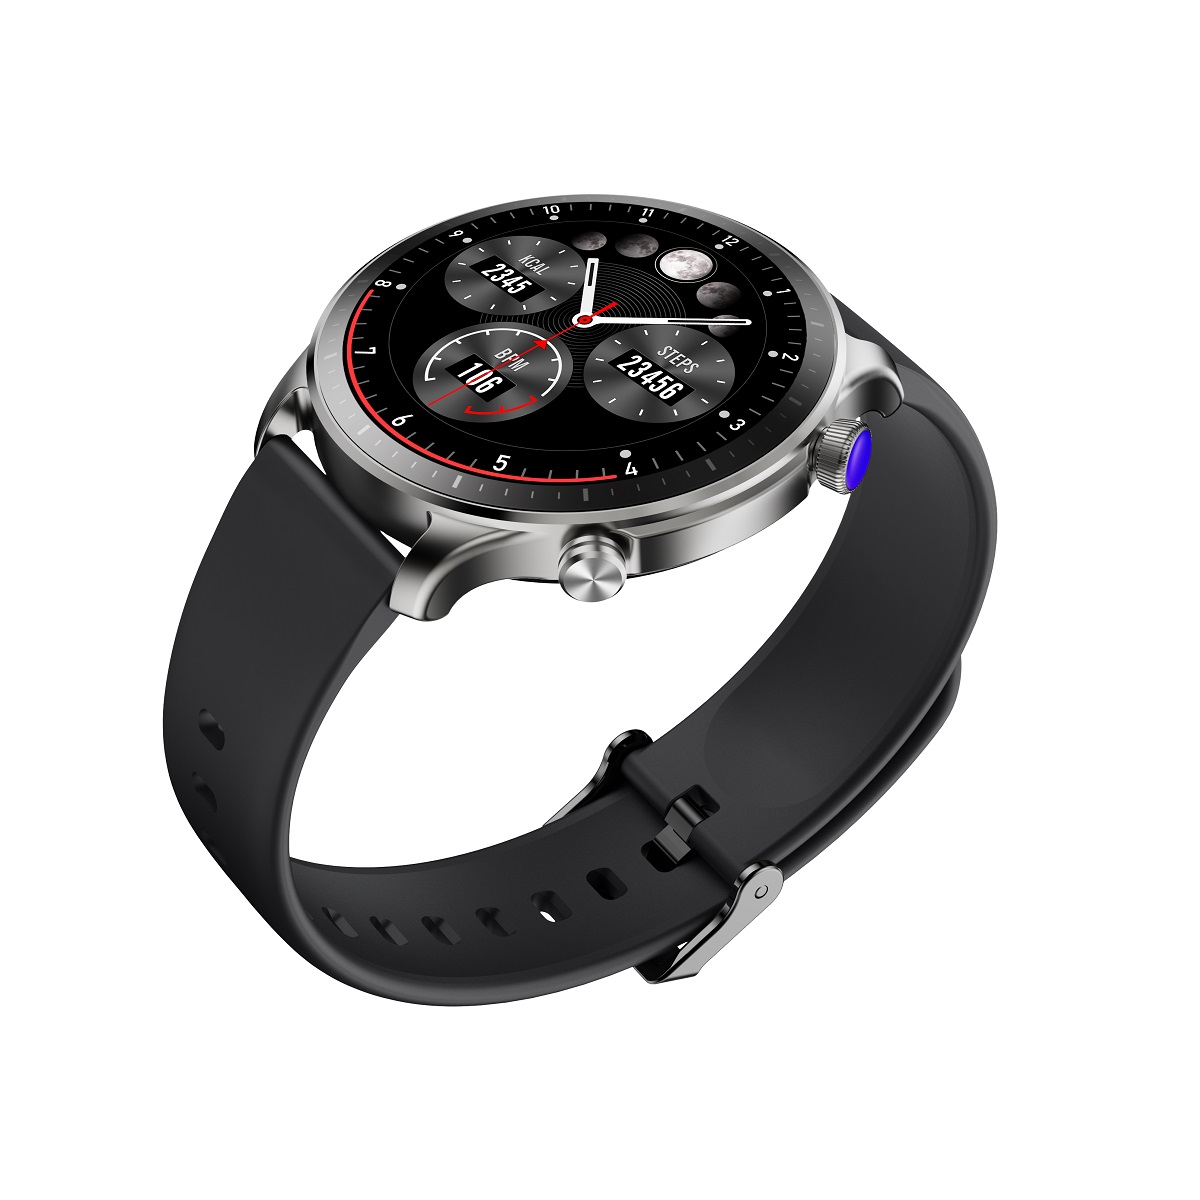 Elegancki zegarek mski wodoodporny elektroniczny sportowy z okrga tarcz smartwatch Riversong Motive 9 Pro szary SW901 / 3